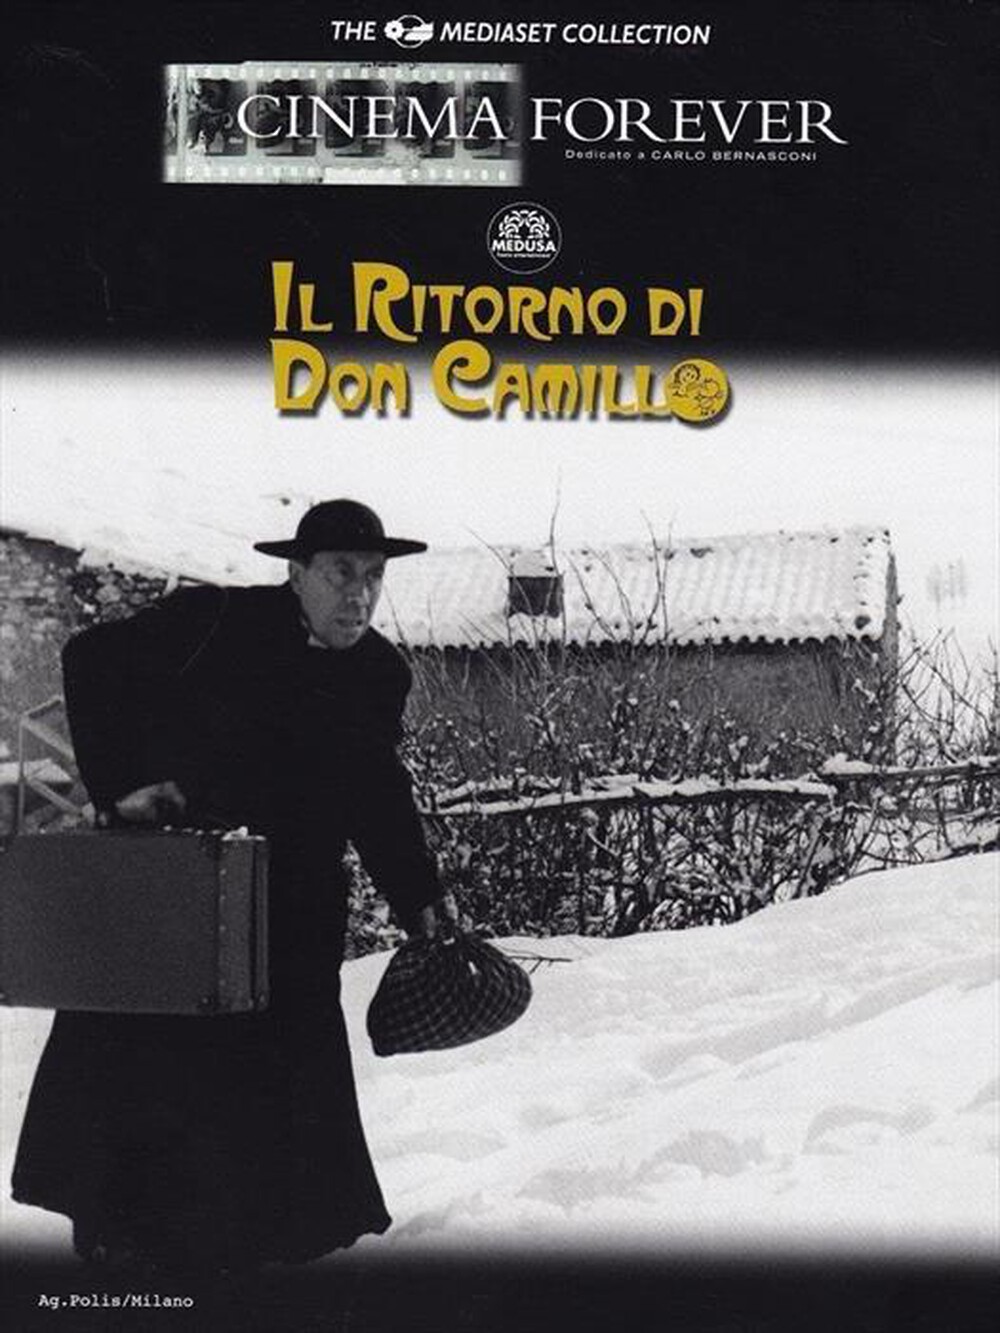 "CECCHI GORI - Don Camillo - Il Ritorno Di Don Camillo"